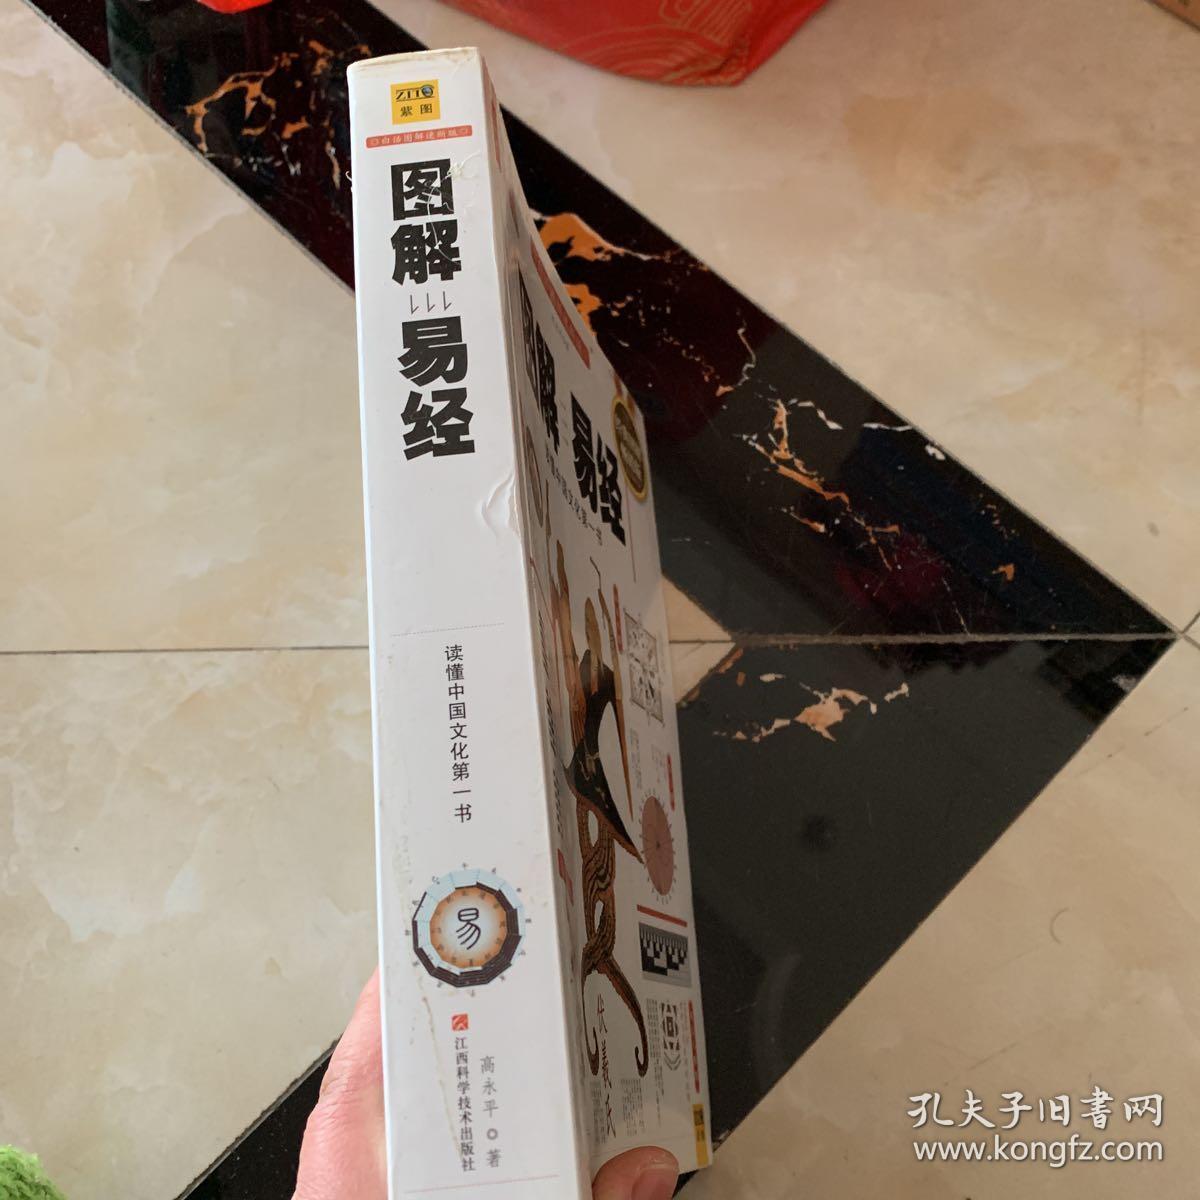 图解易经：读懂中国文化第一书（经典图解畅销版）